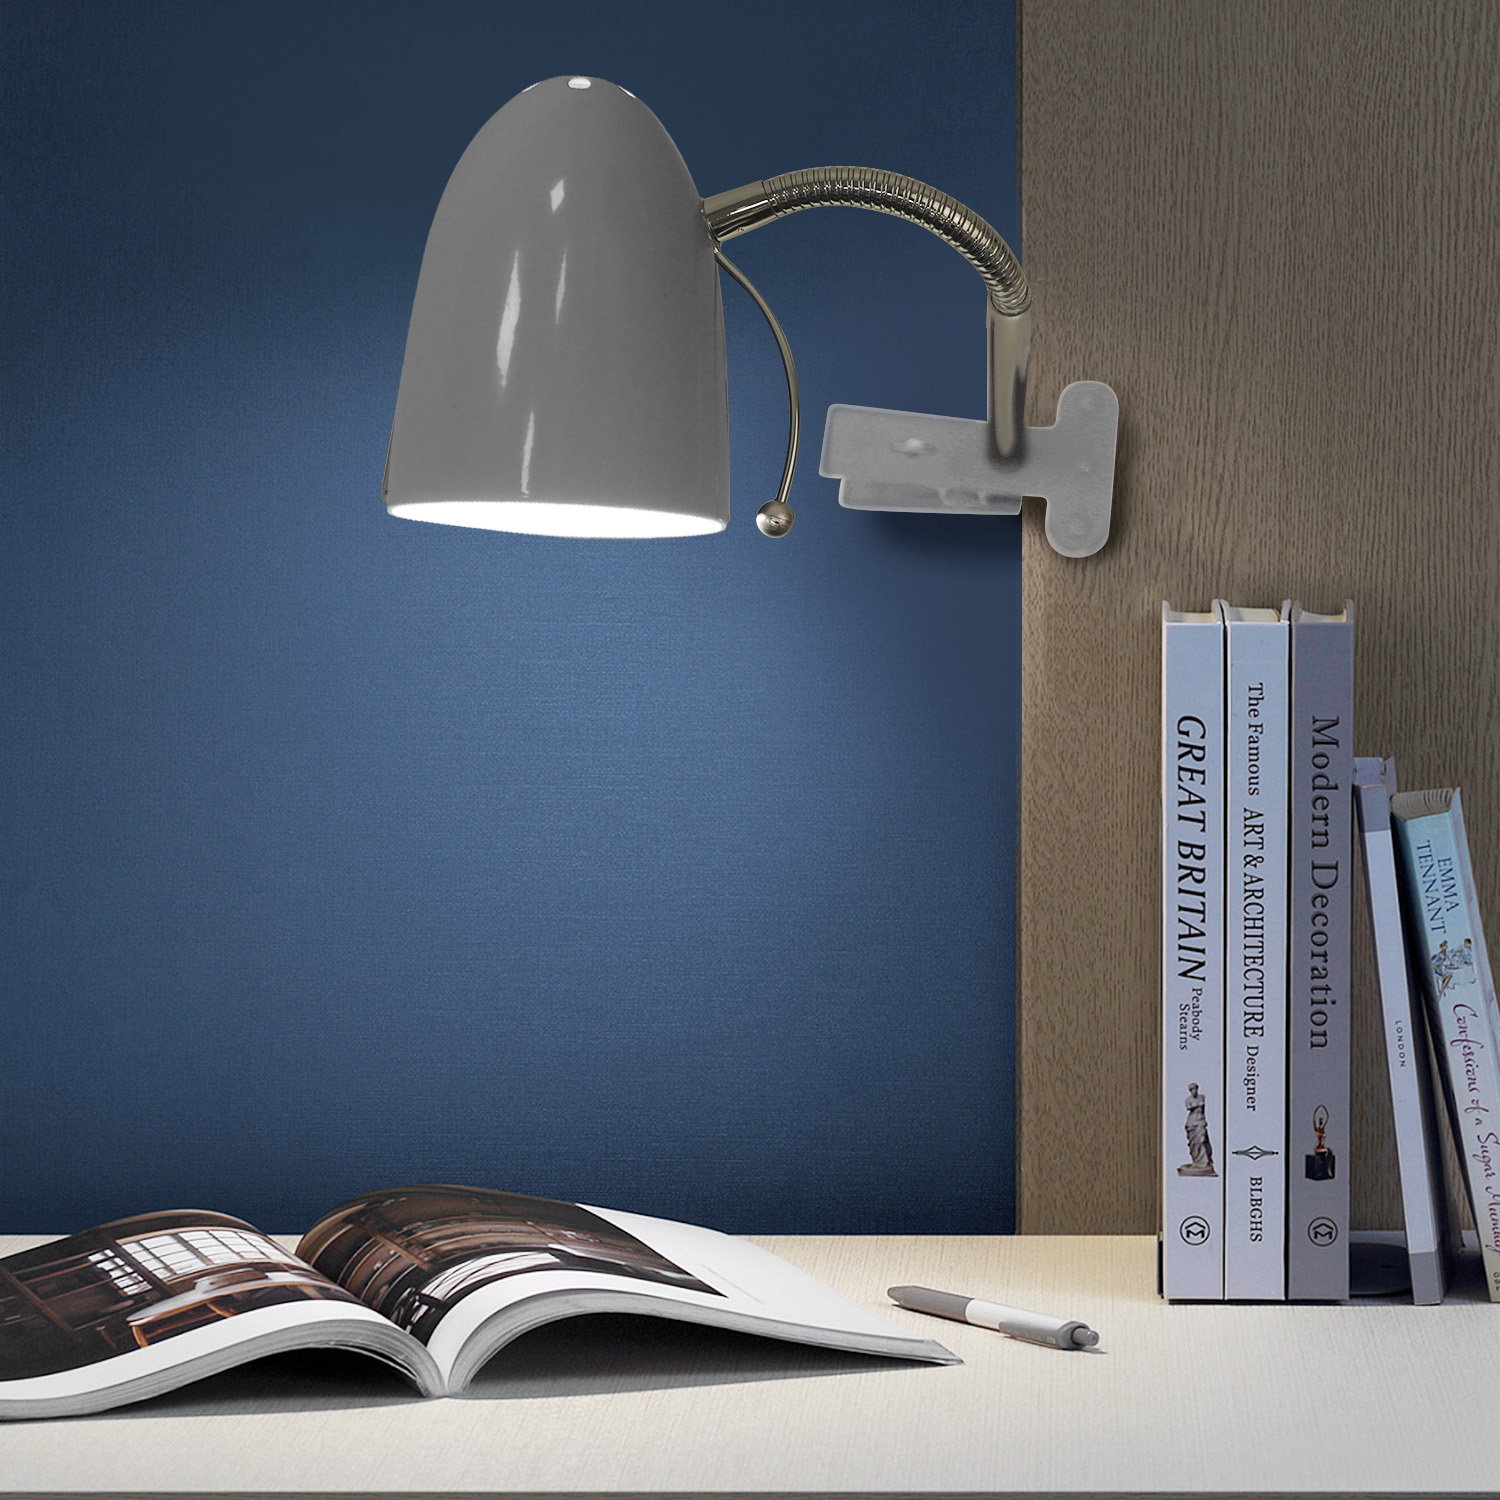 Aigostar - Tafellamp, beweegbaar, met bevestigingsklem, retro-design, E27(max 11W), Lampen niet inbegrepen, wit